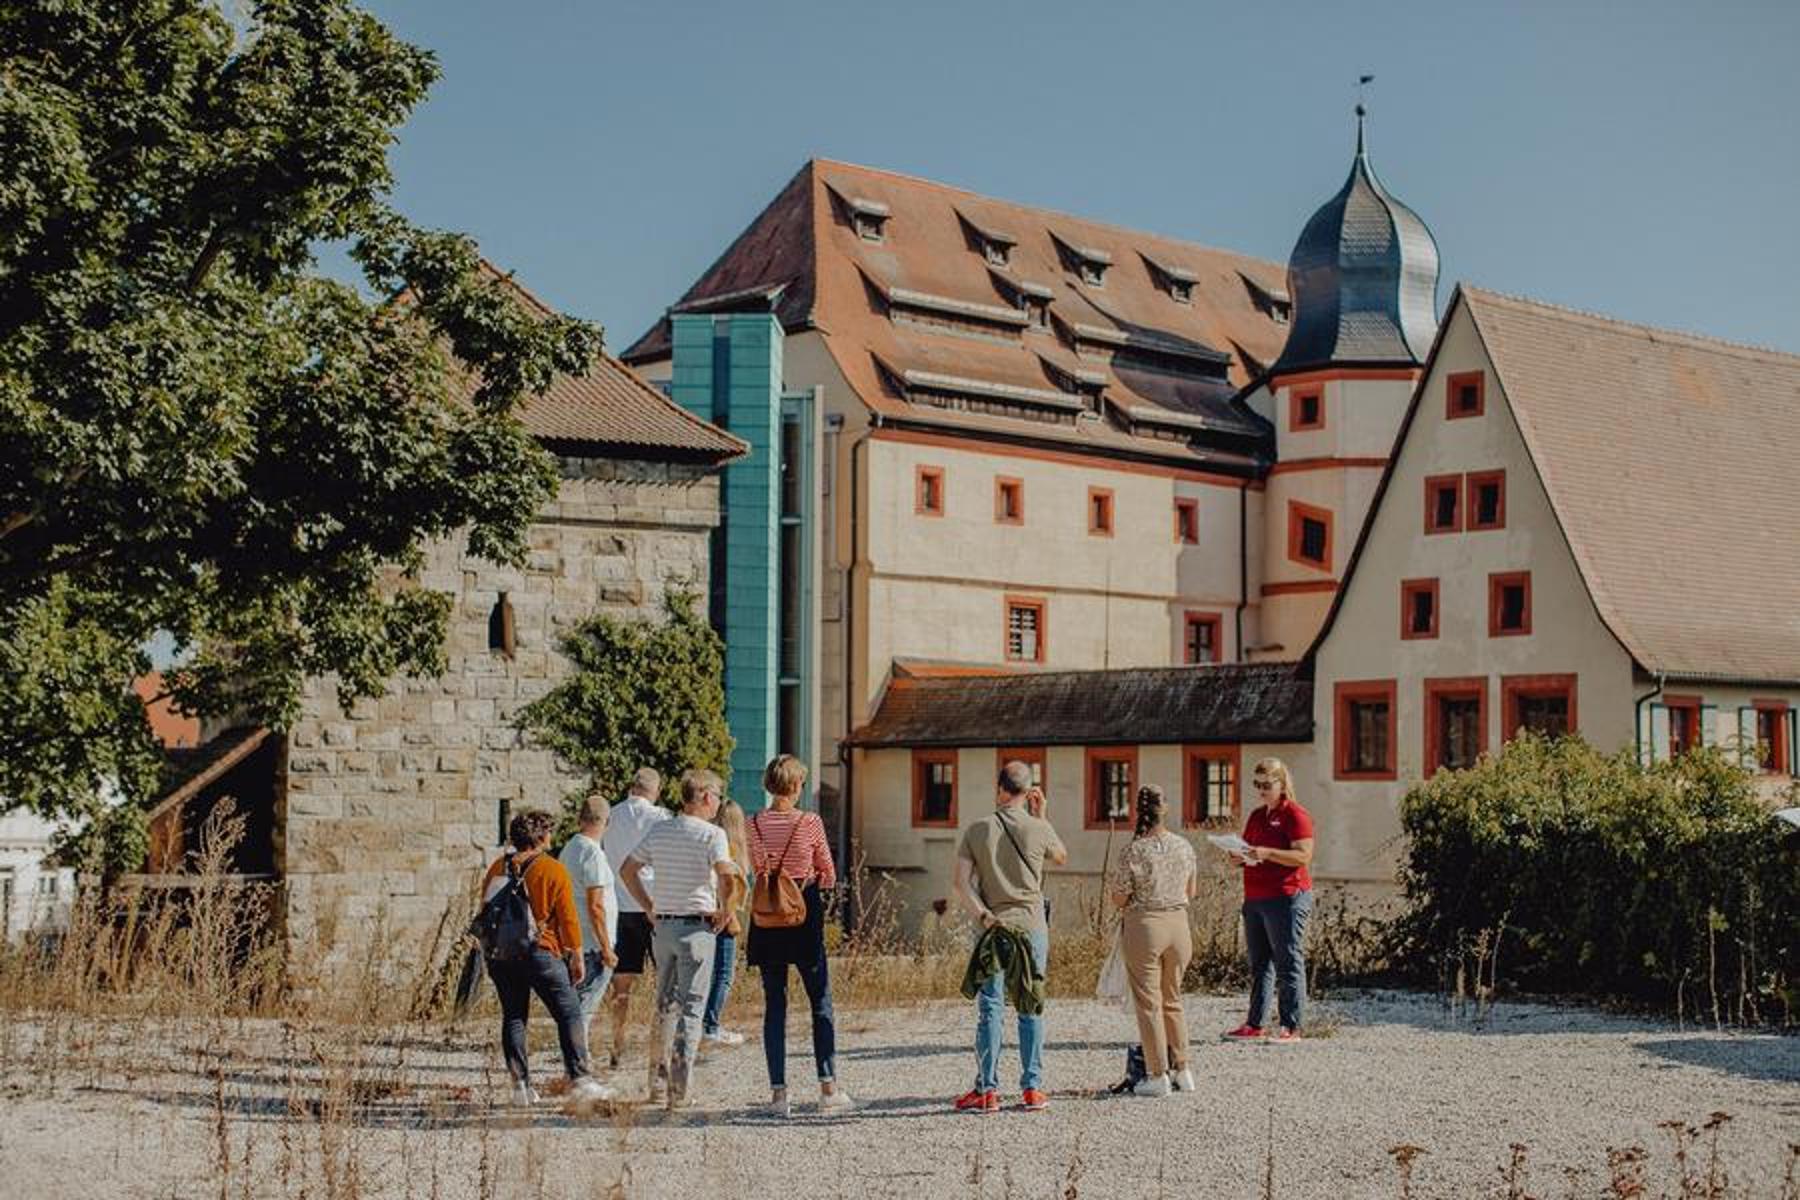 Die Stadt Forchheim wird auch Königsstadt genannt! Möchten Sie wissen warum? Unsere Gästeführer/innen nehmen Sie mit auf einen Rundgang durch die historische Altstadt und der mehr als 1200 Jahre alten Geschichte Forchheims. Sie reisen in eine läng...